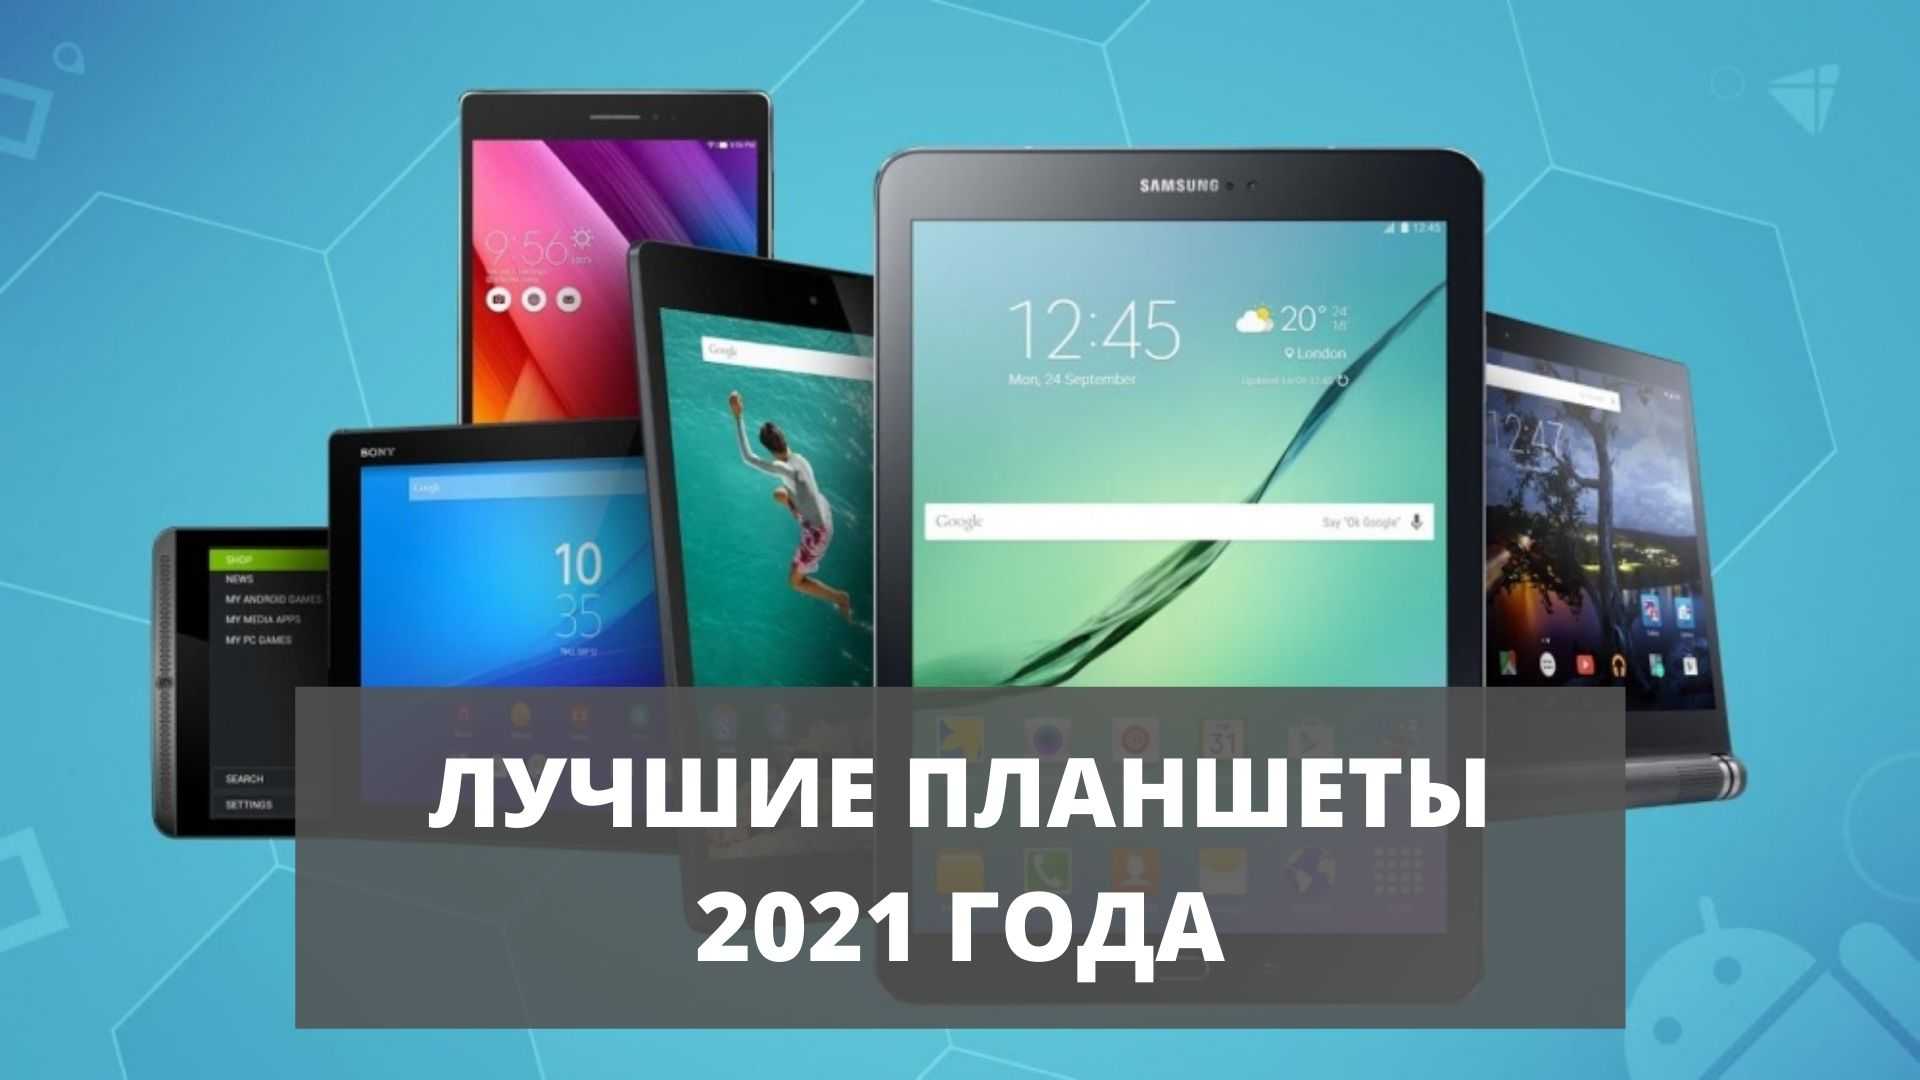 Планшетные компьютеры до 20000 рублей: рейтинг лучших моделей по надёжности и качеству